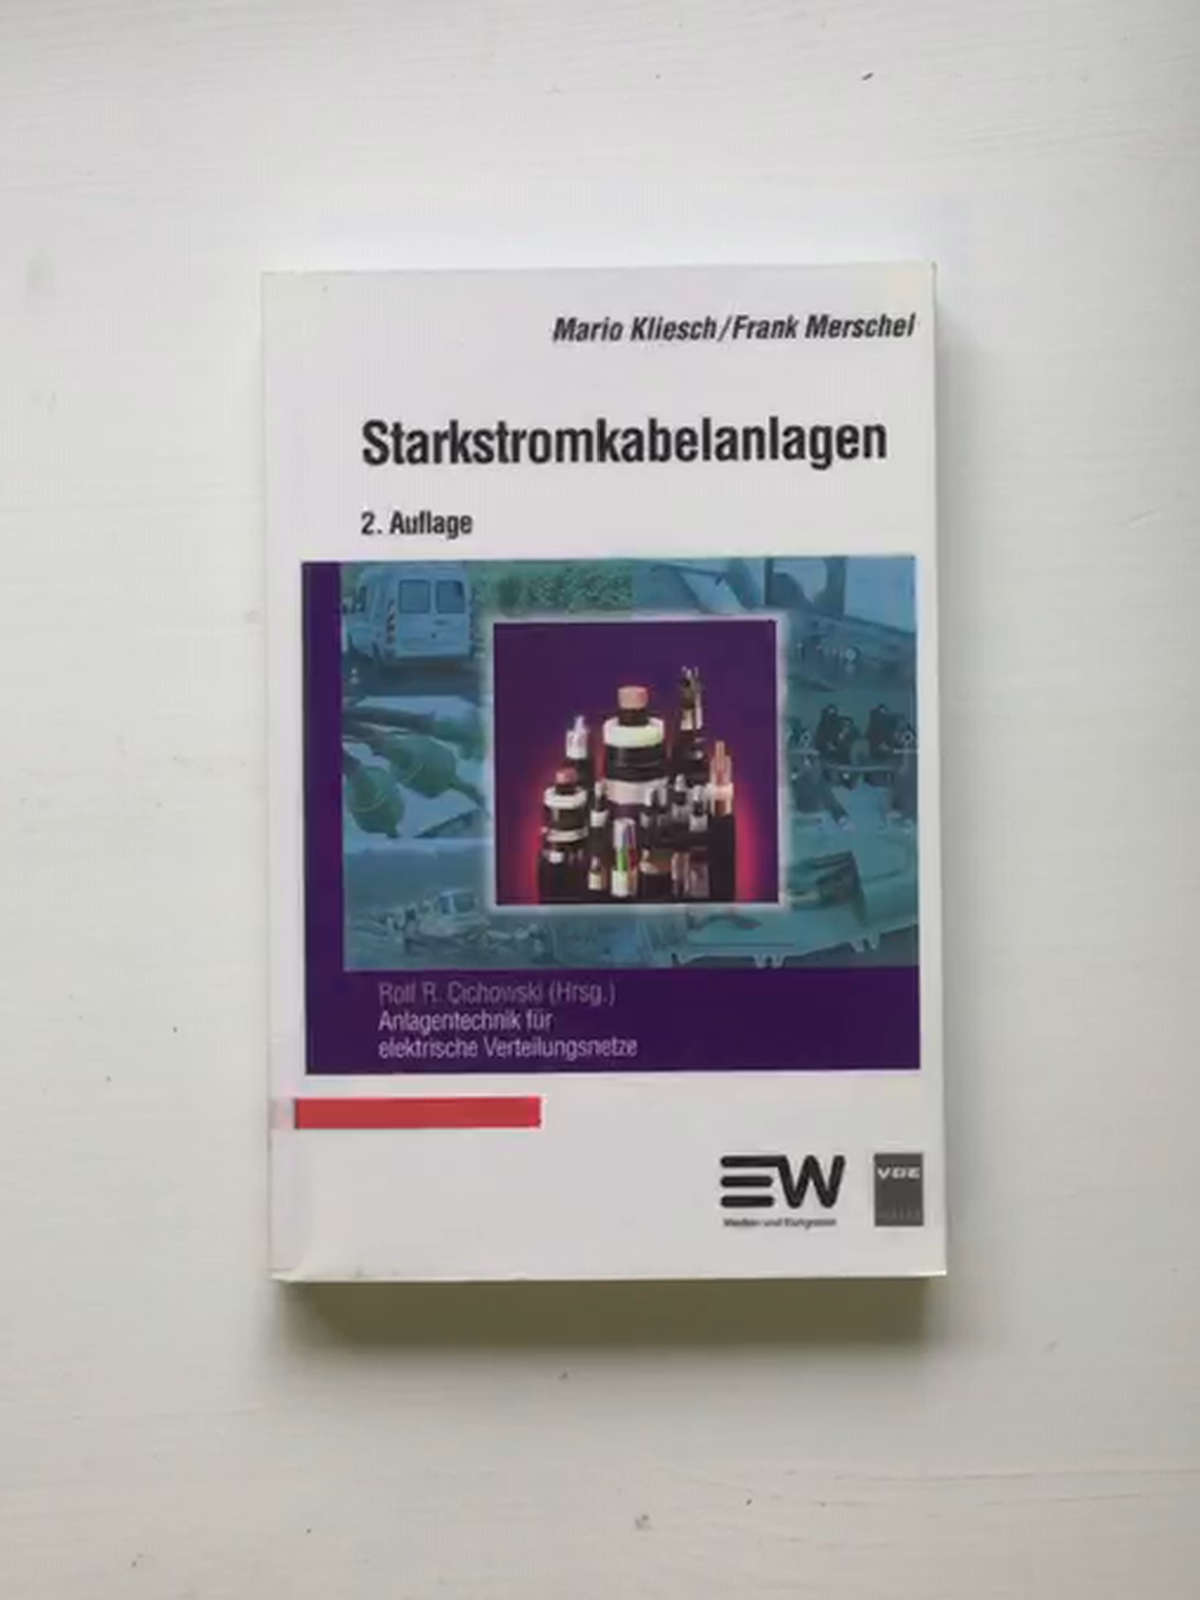 Starkstromkabelanlagen: Anlagentechnik für elektrische Verteilungsnetze - Mario Kliesch - Frank Merschel